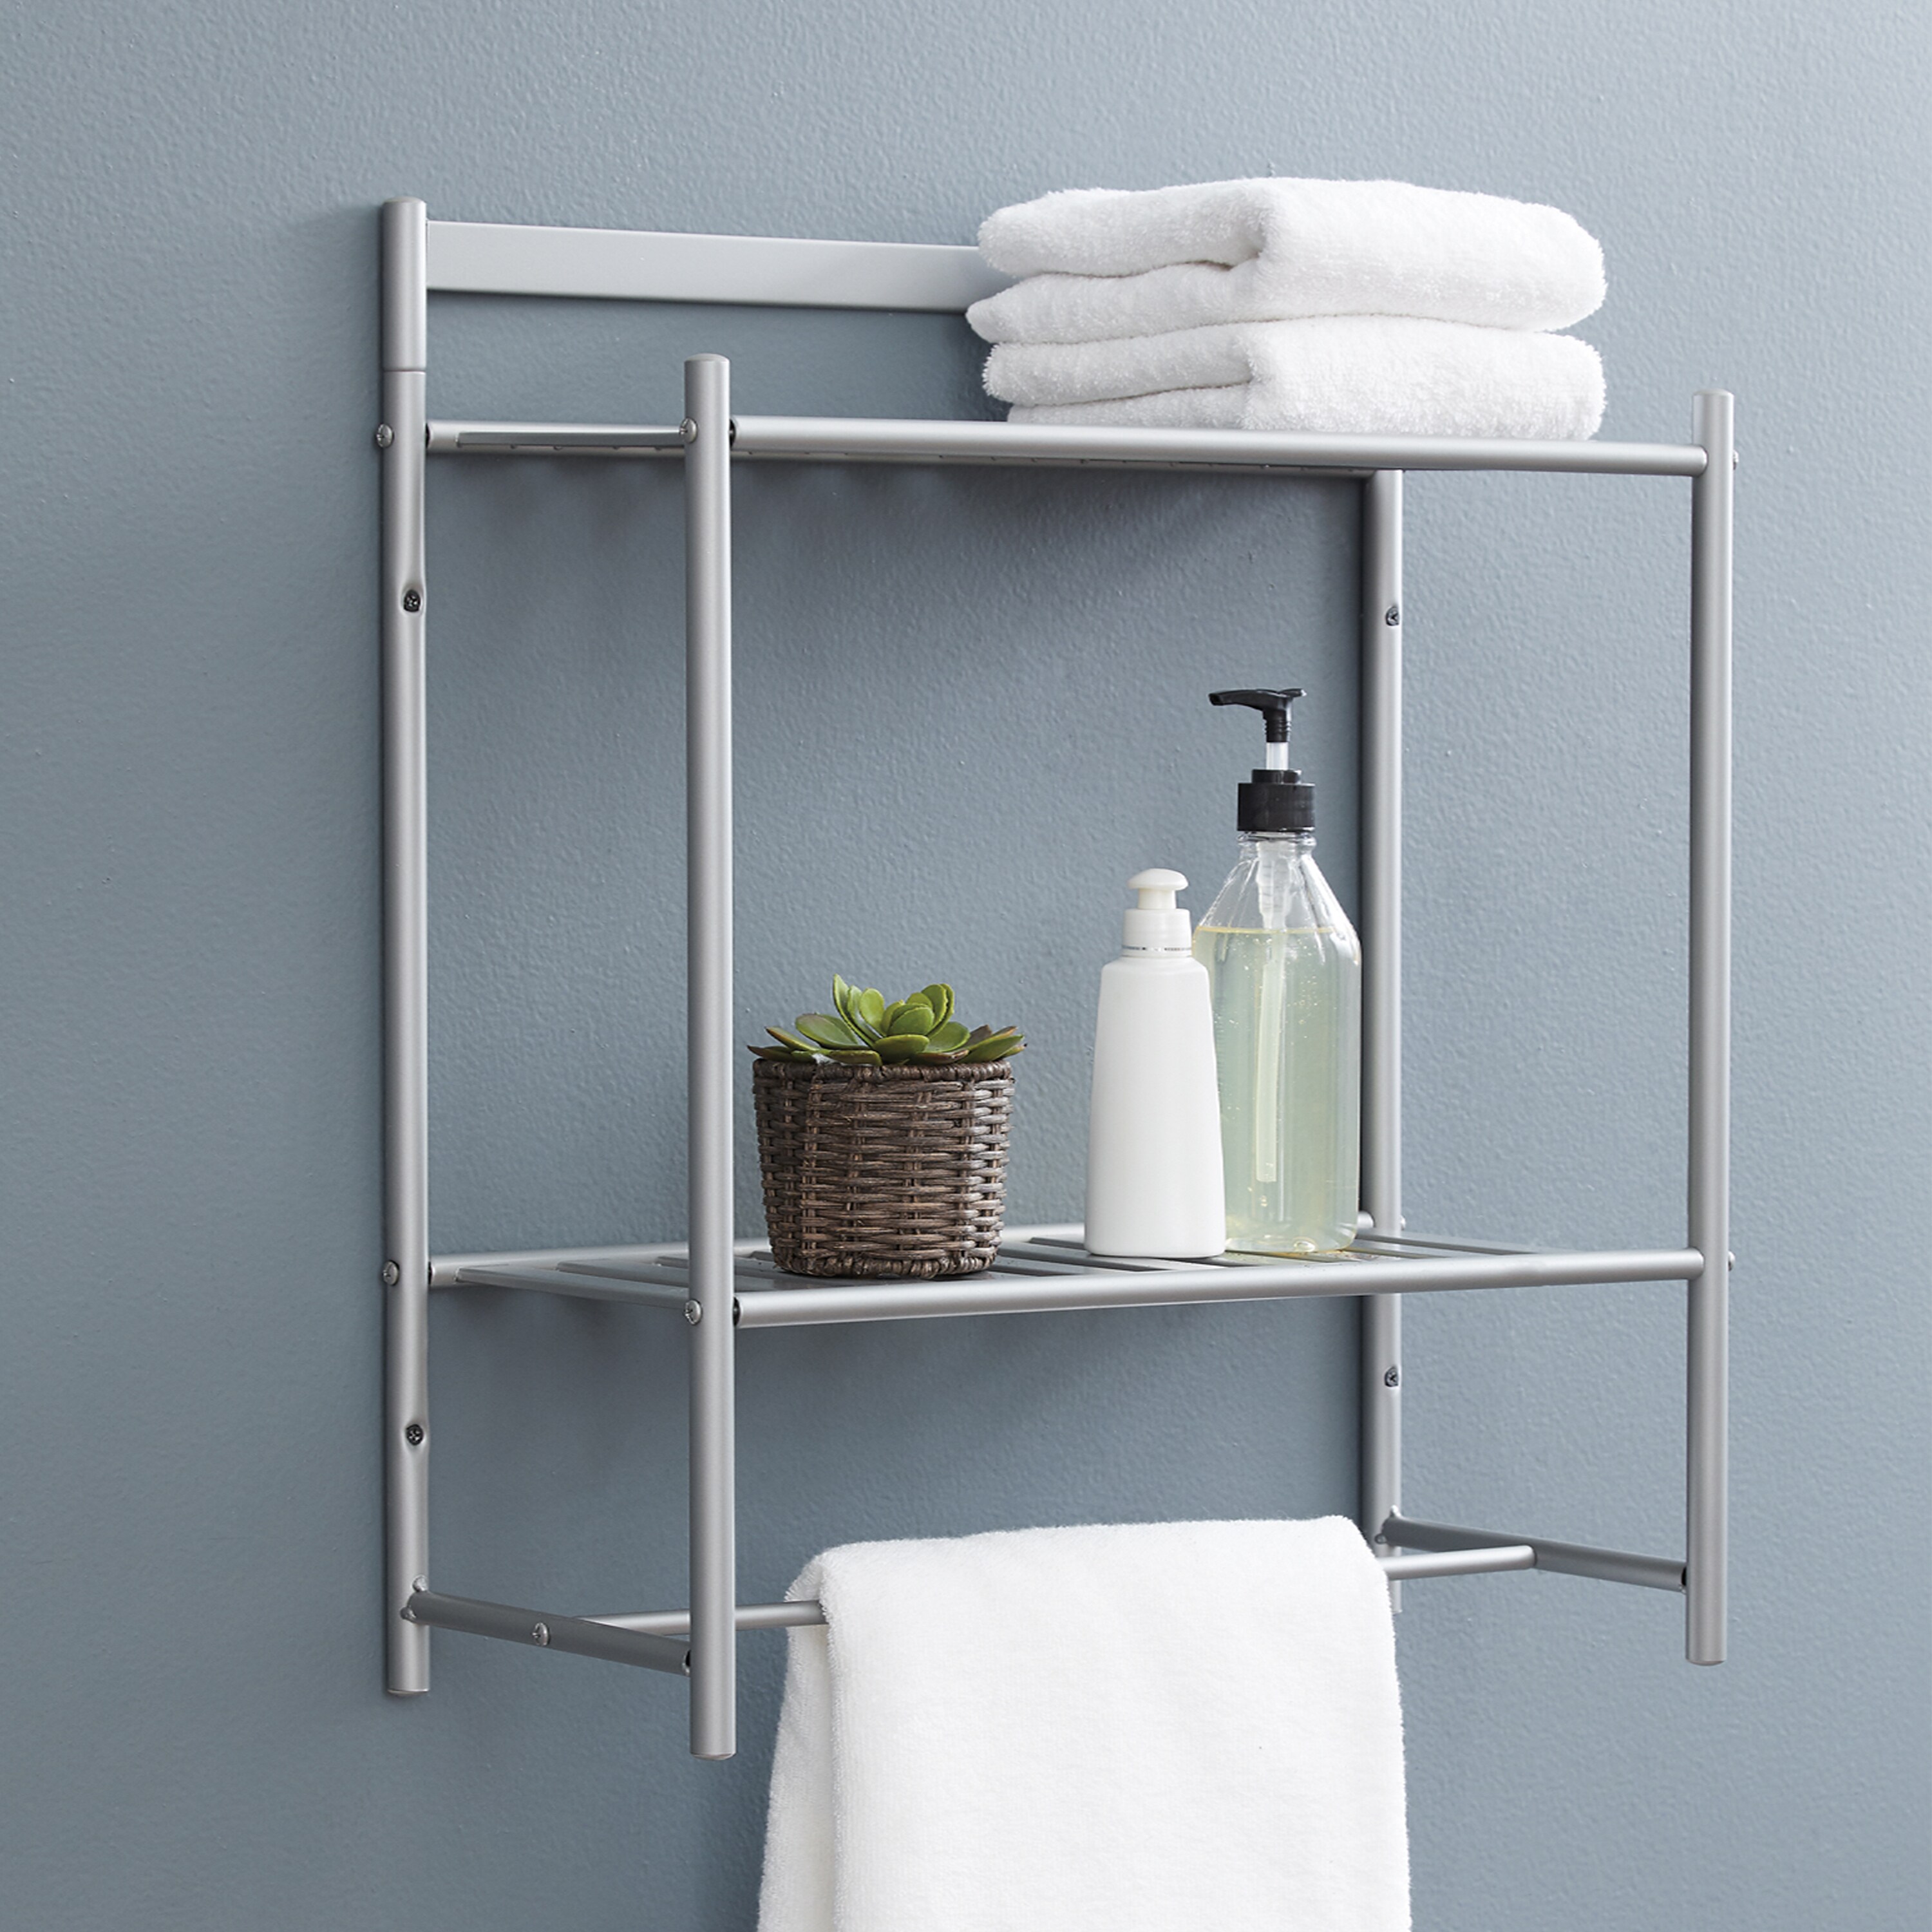 Modern Bathroom Shelf Organizer: Aluminum Alloy, Wall-mounted